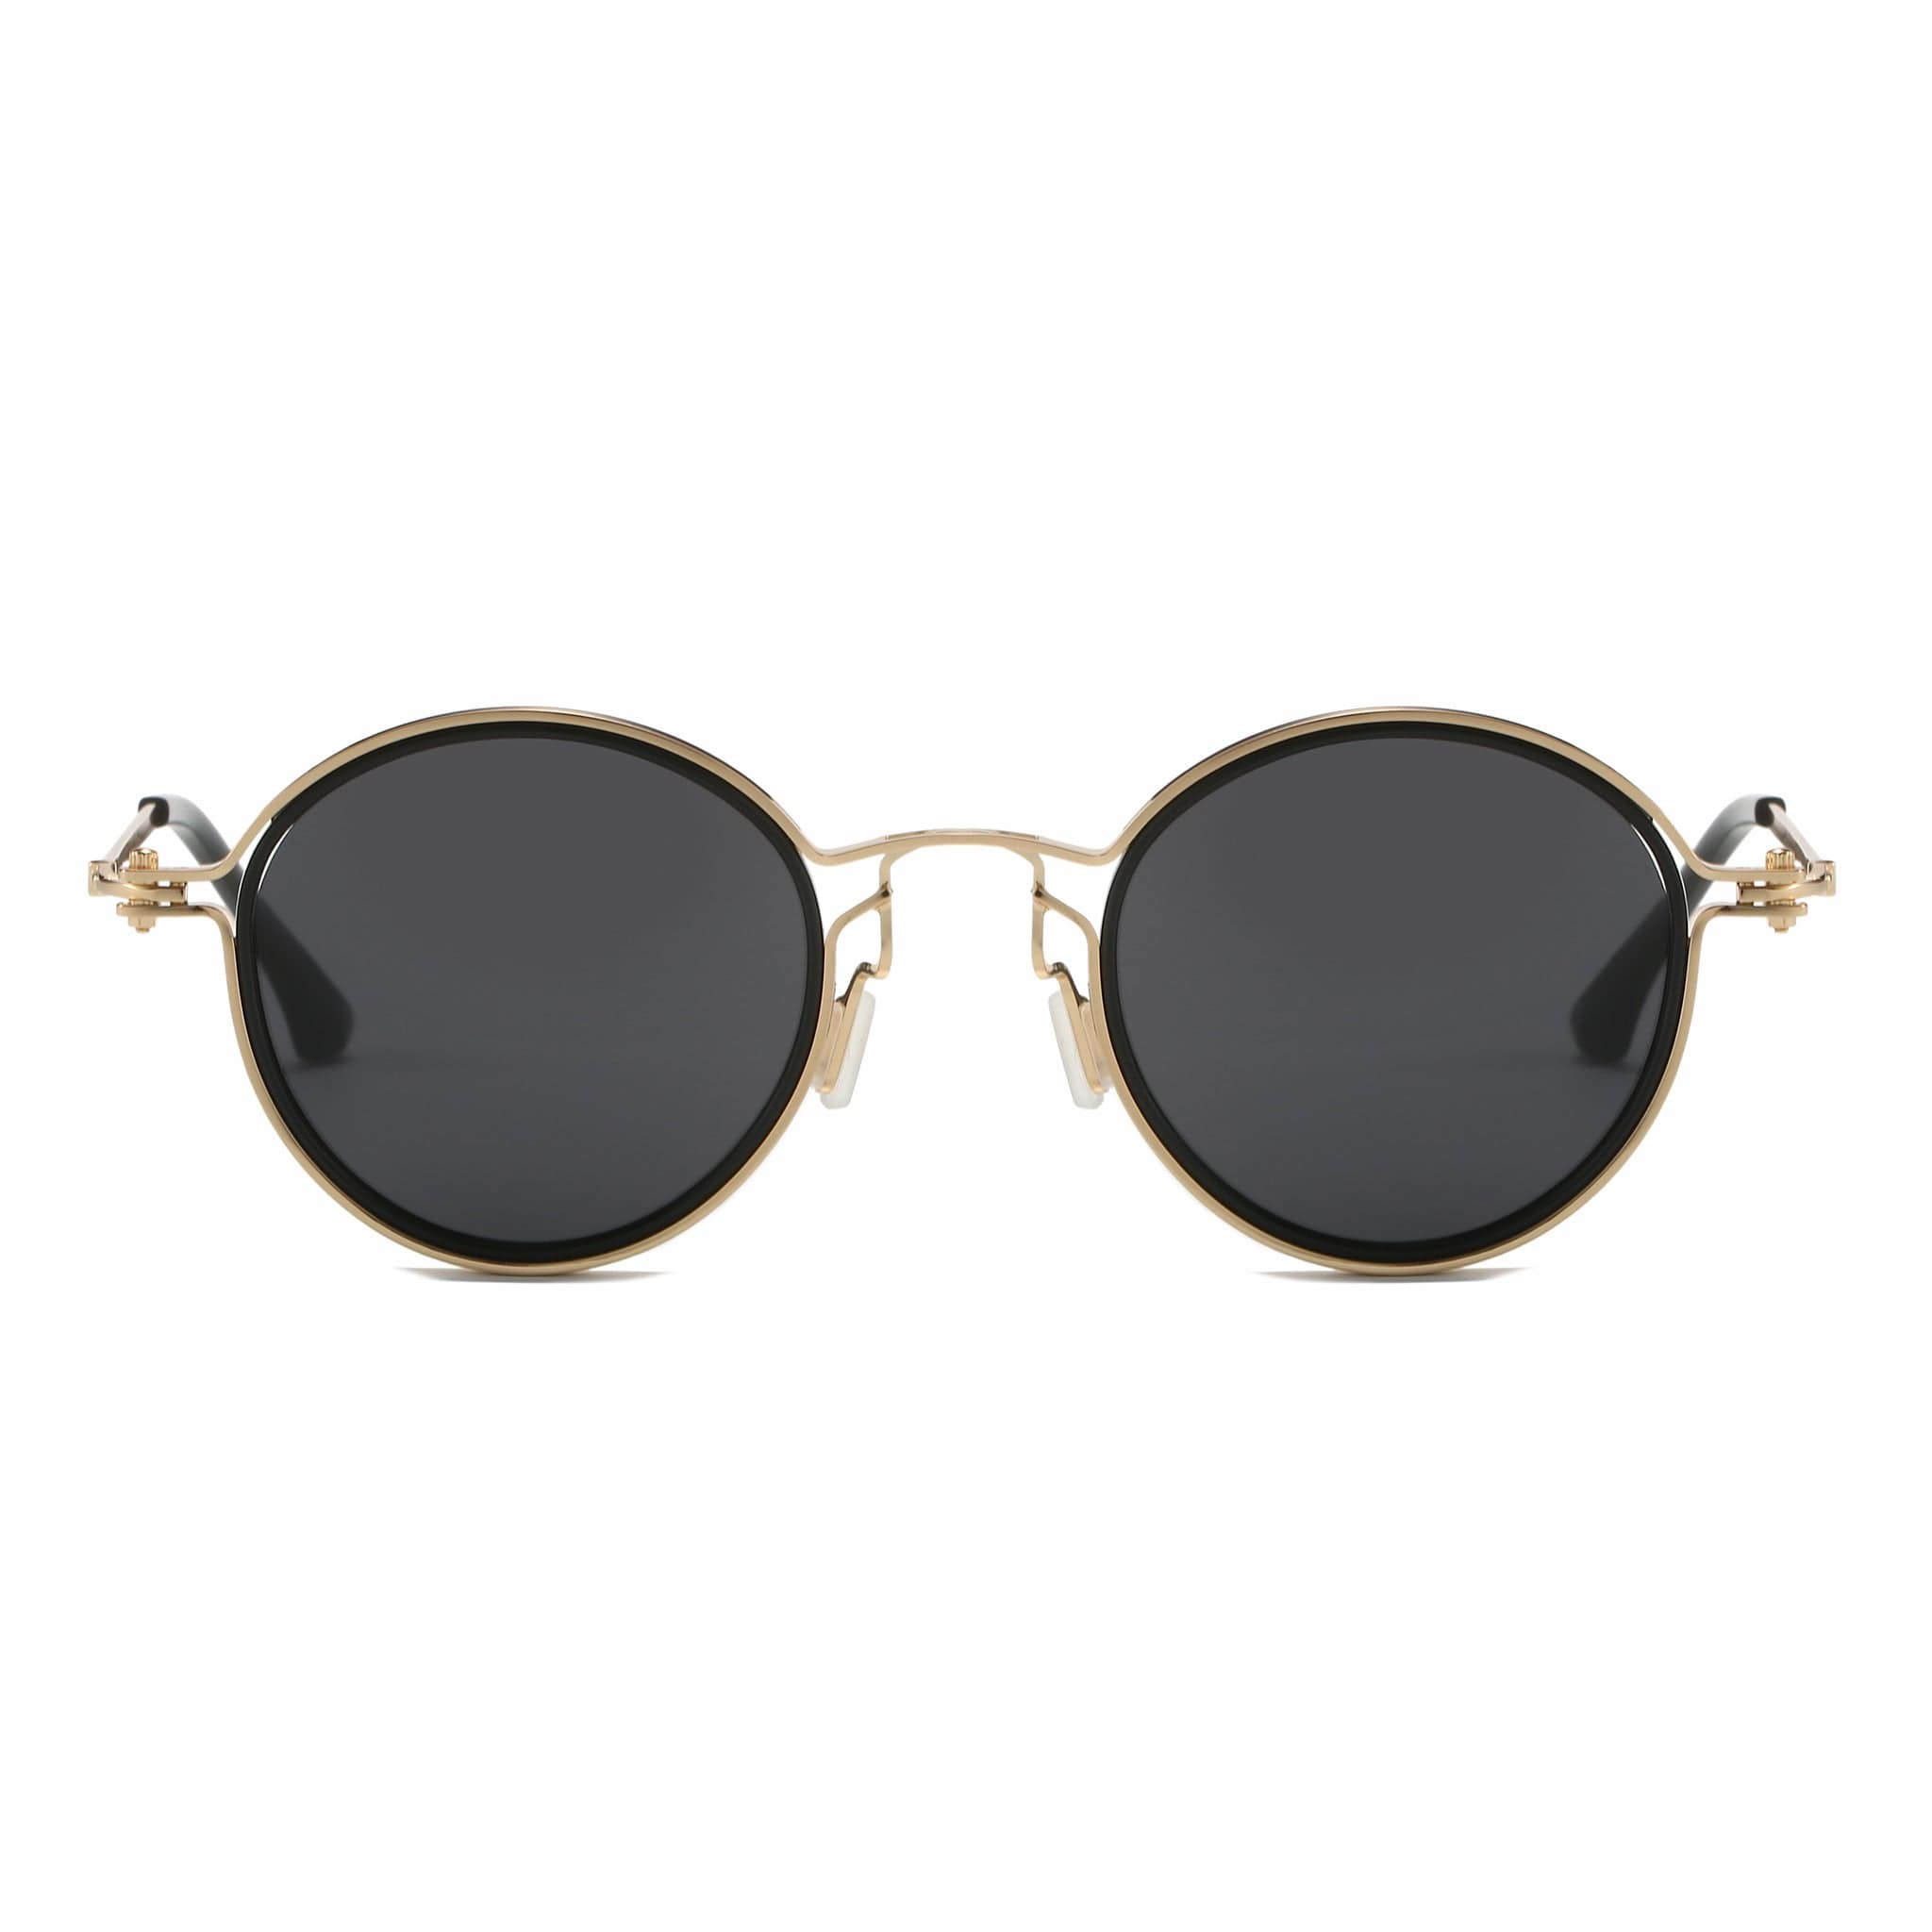 GIUSTIZIERI VECCHI Sunglasses Small / Black with Gold Dolce Vita Uno